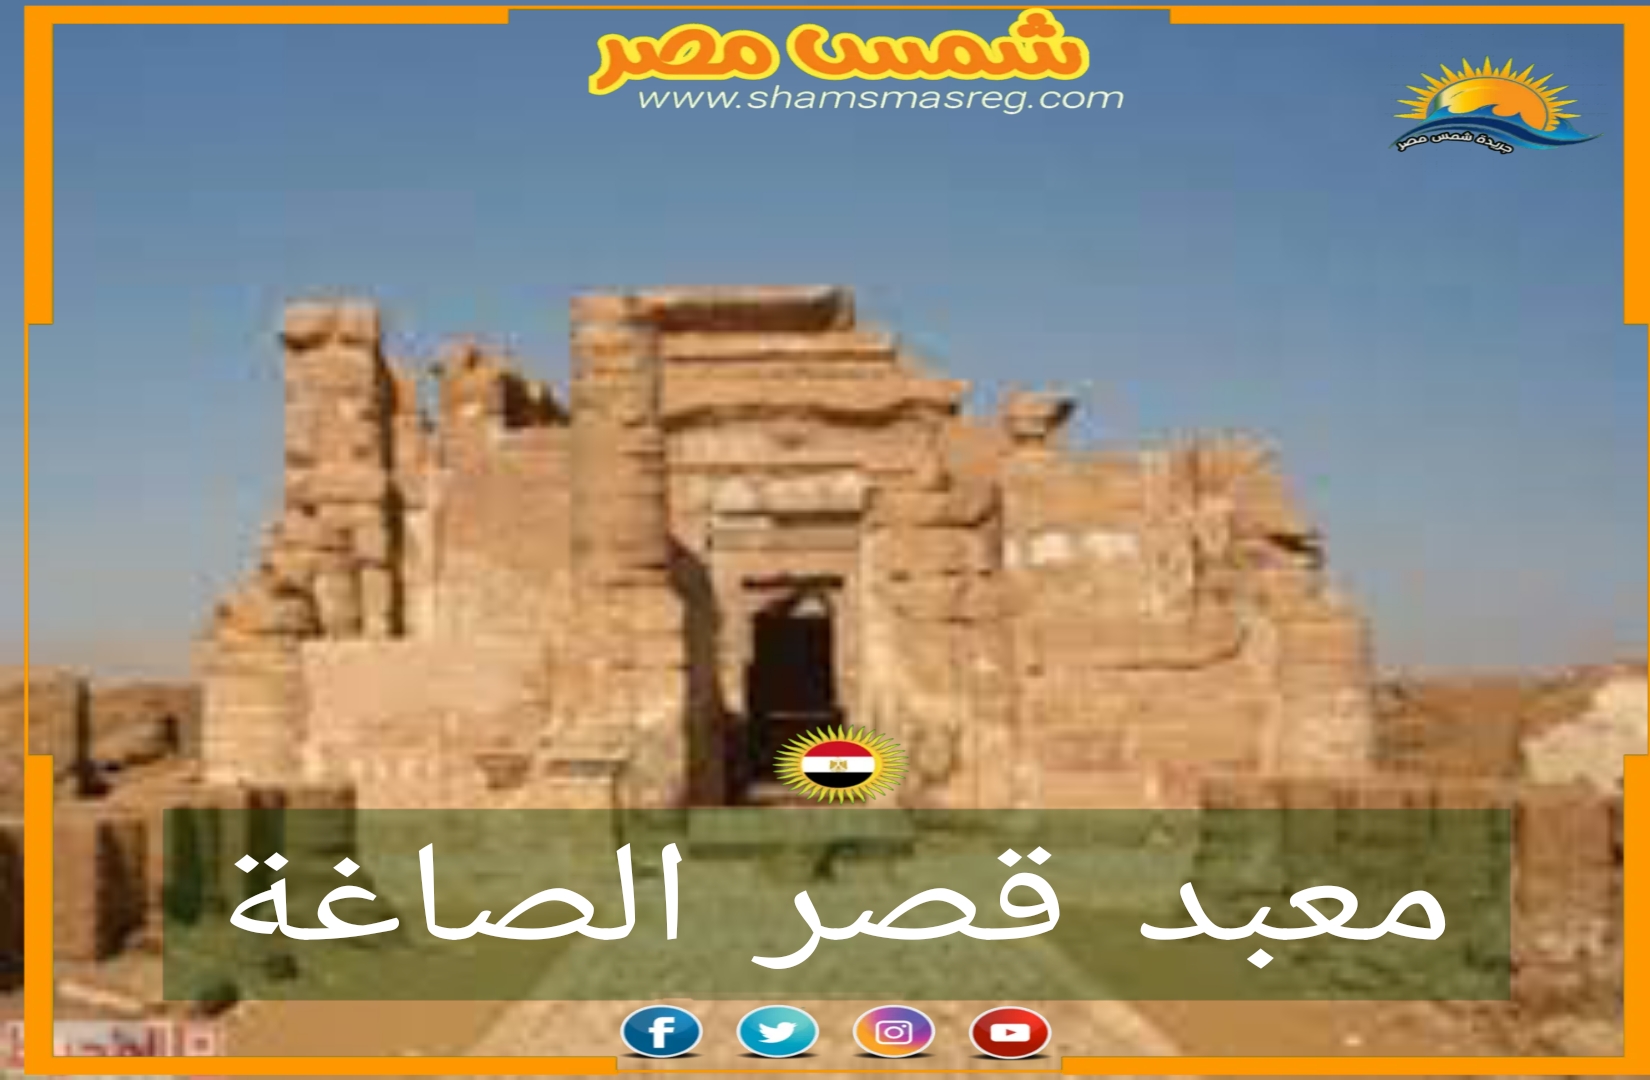 شمس مصر/ معبد قصر الصاغة